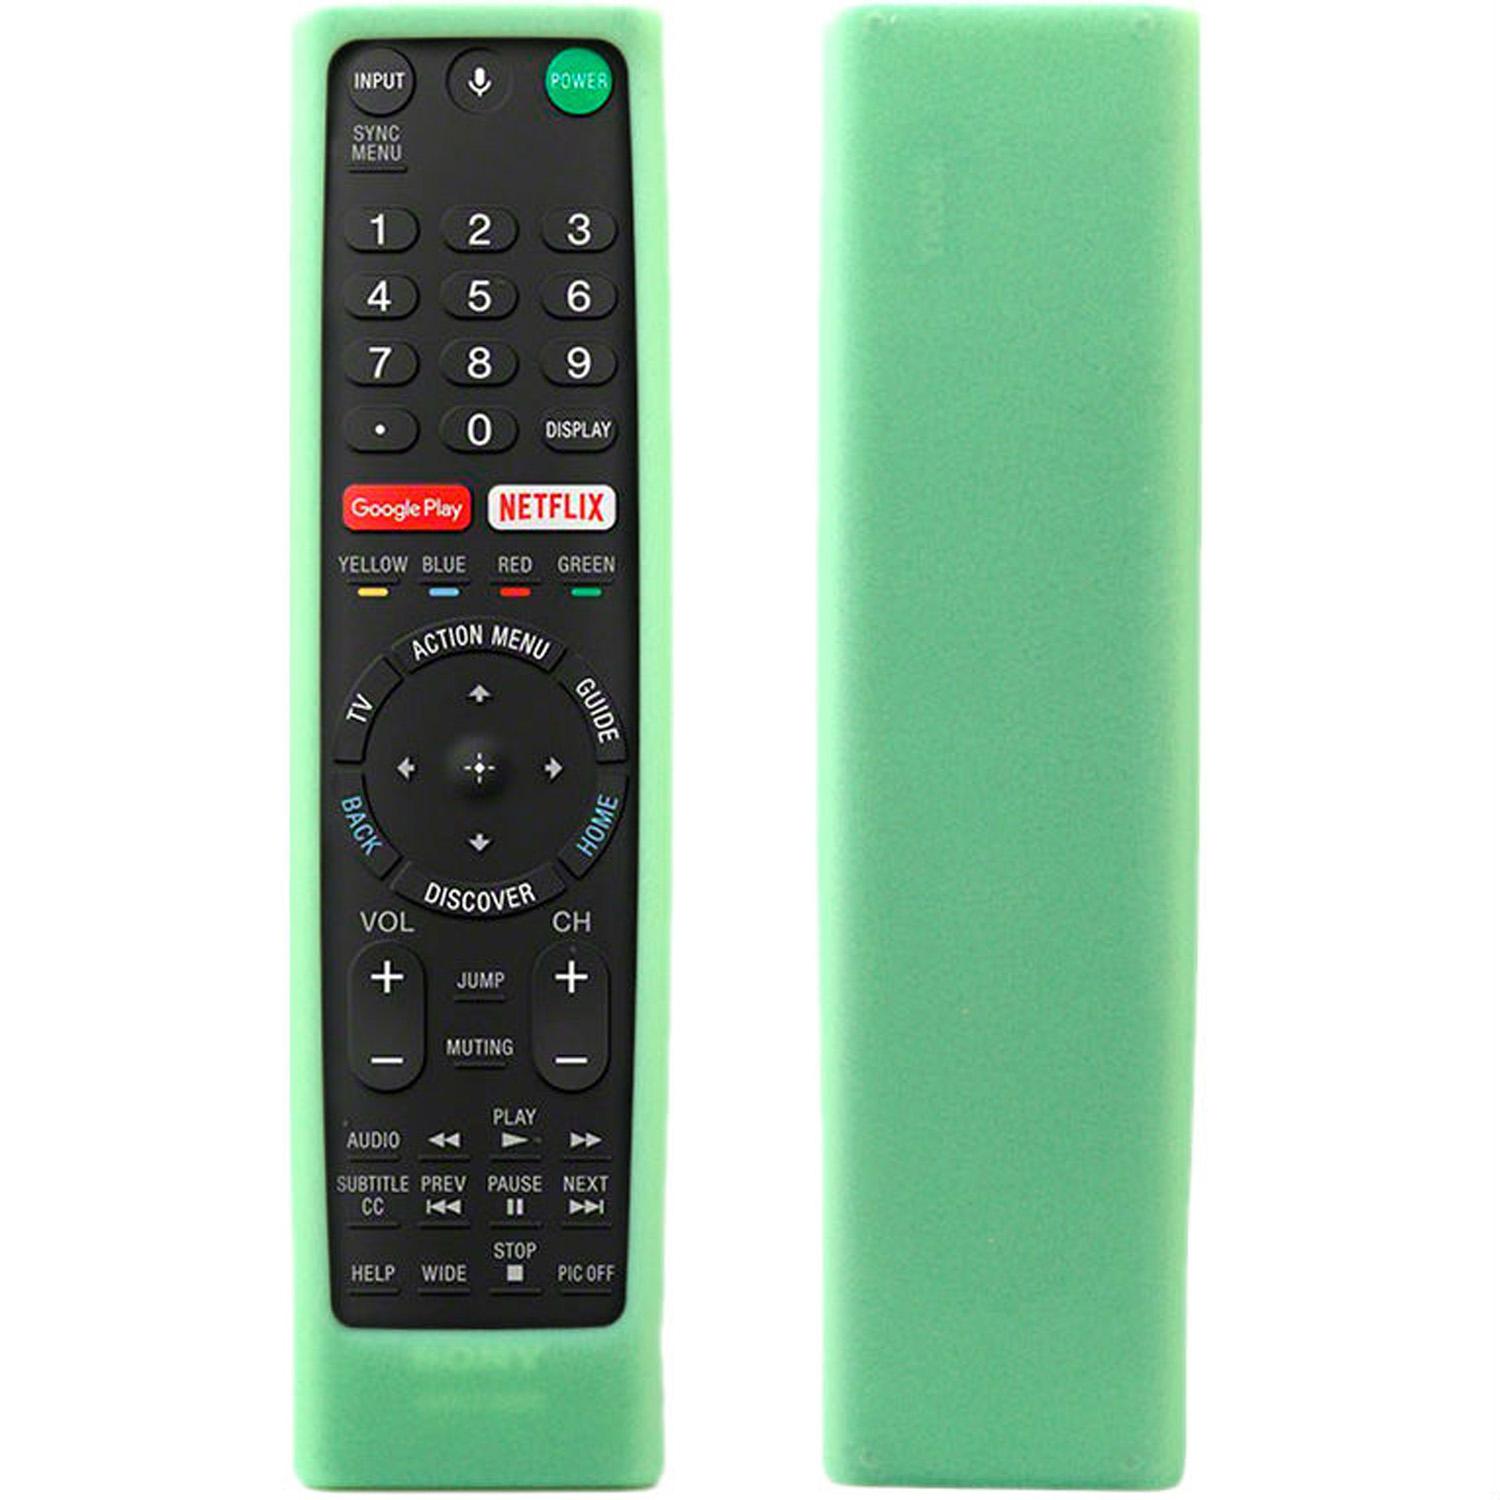 Чехол силиконовый для пульта SONY зеленый Piko TV, фото